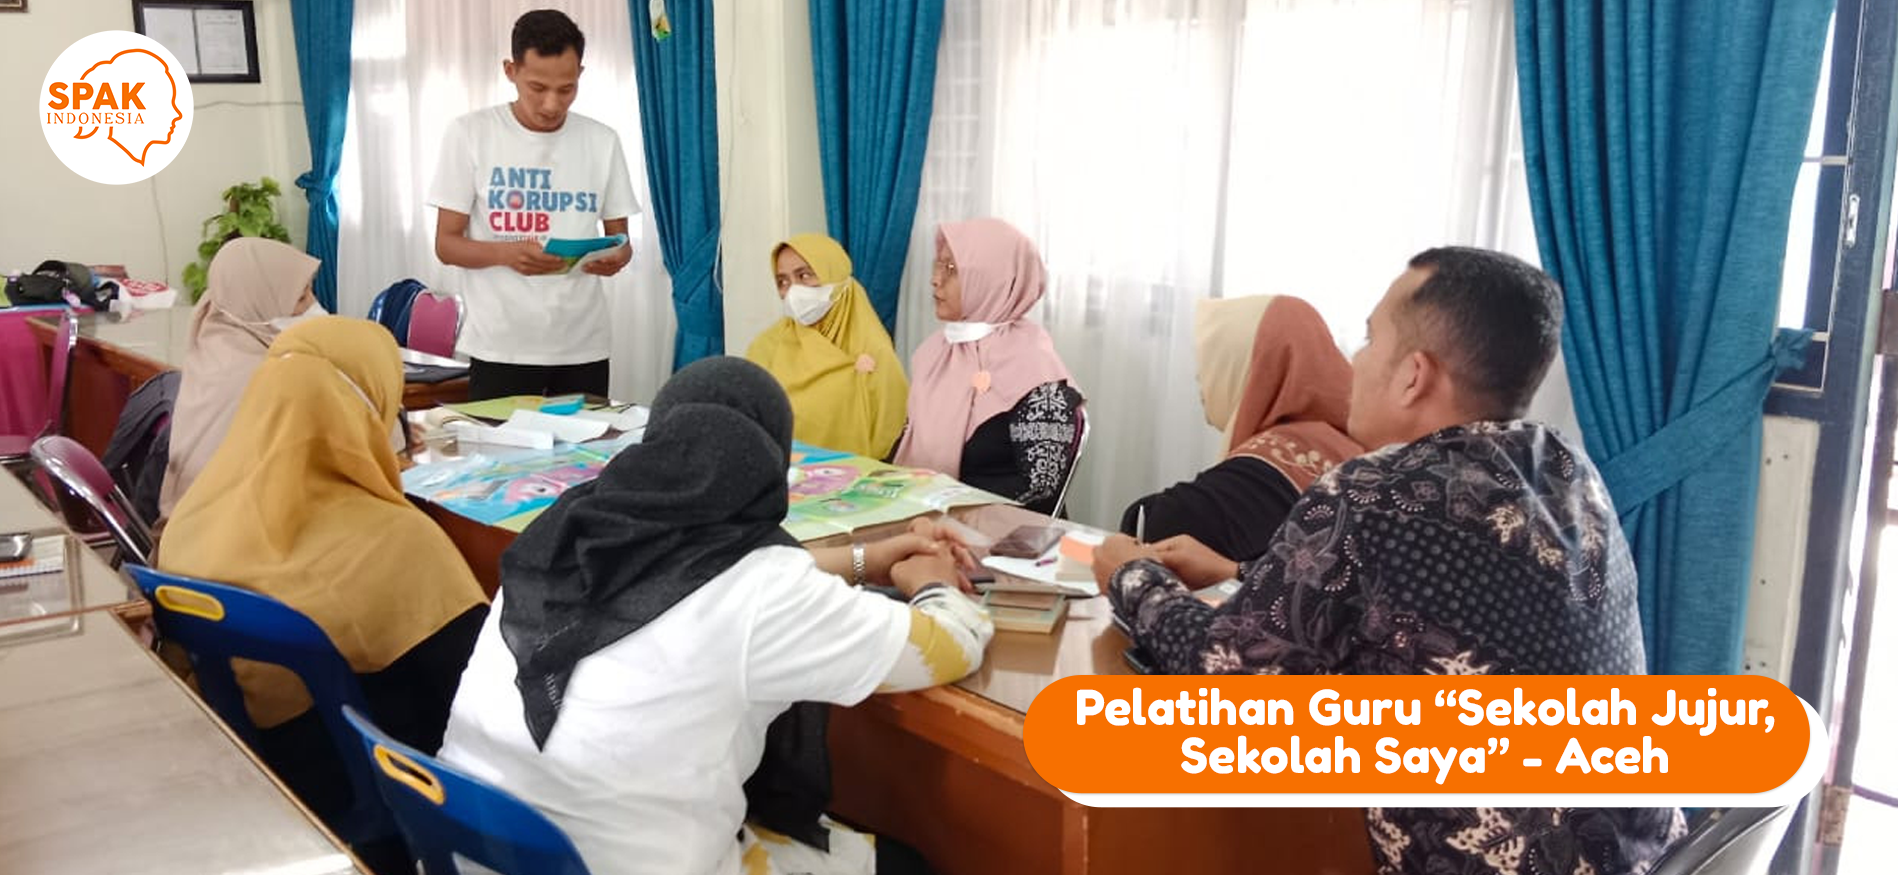 Pelatihan Guru Sekolah Jujur Sekolah Saya Aceh Besar SPAK